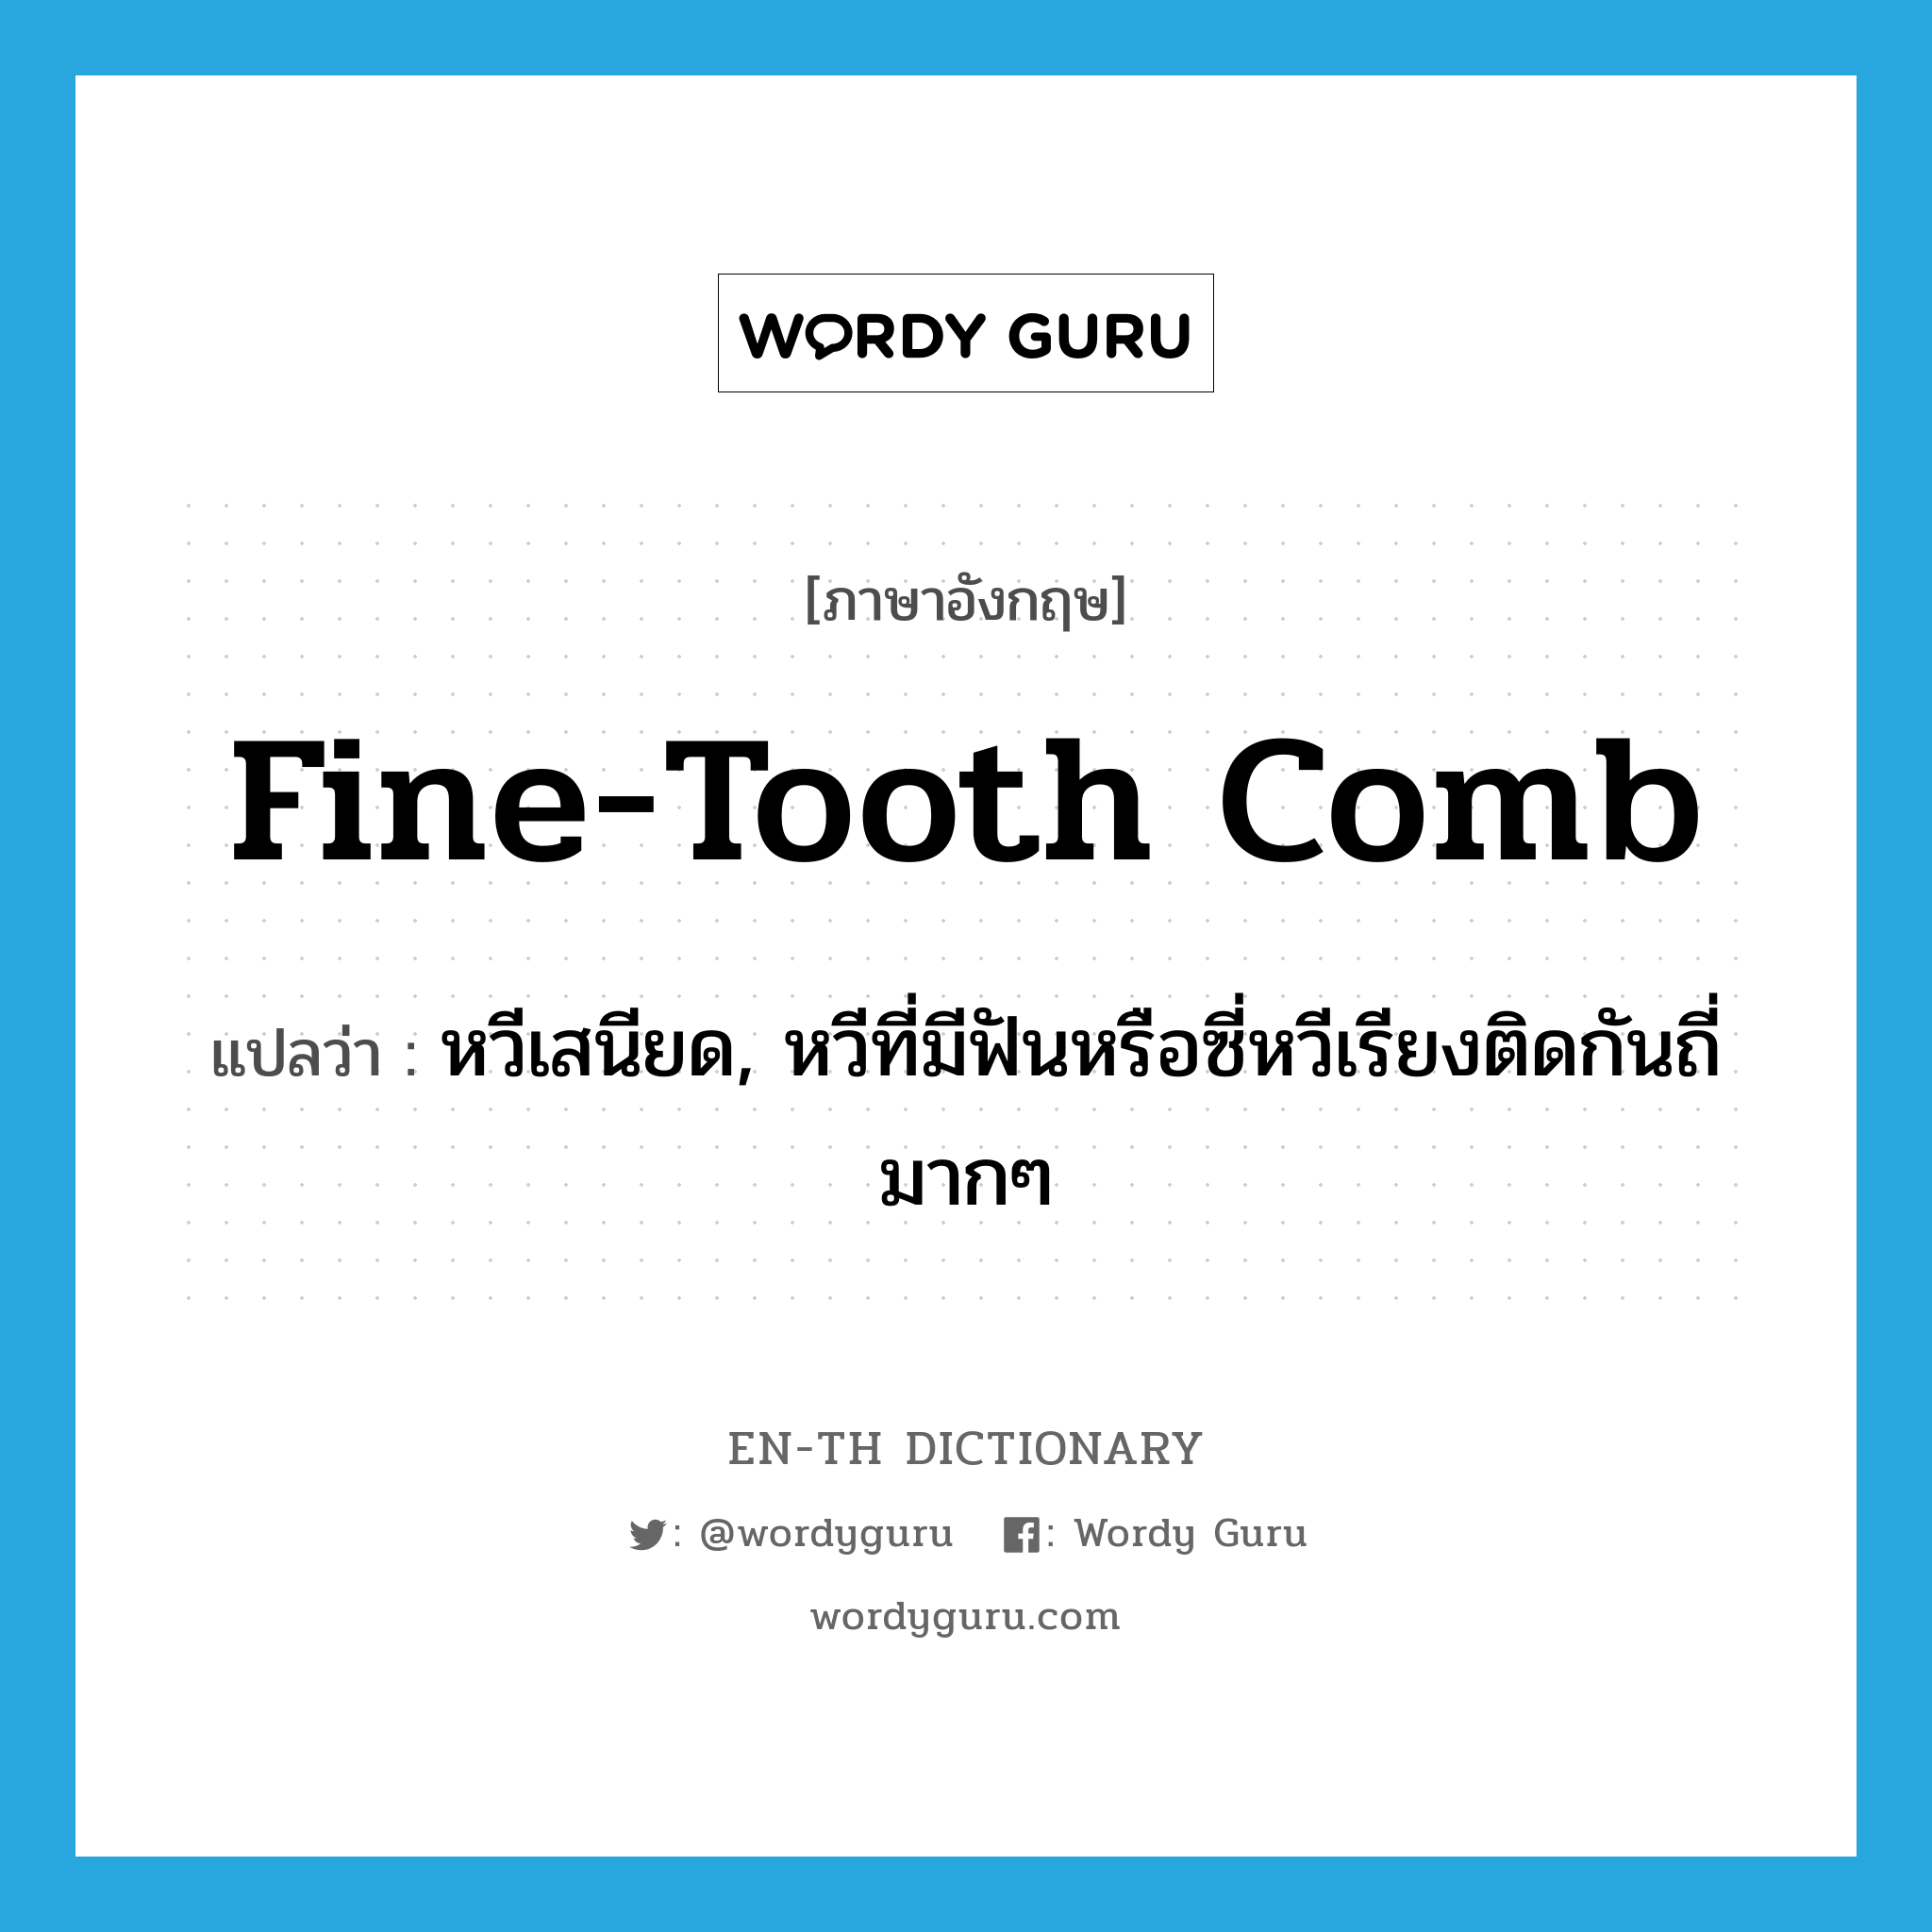 หวีเสนียด, หวีที่มีฟันหรือซี่หวีเรียงติดกันถี่มากๆ ภาษาอังกฤษ?, คำศัพท์ภาษาอังกฤษ หวีเสนียด, หวีที่มีฟันหรือซี่หวีเรียงติดกันถี่มากๆ แปลว่า fine-tooth comb ประเภท N หมวด N